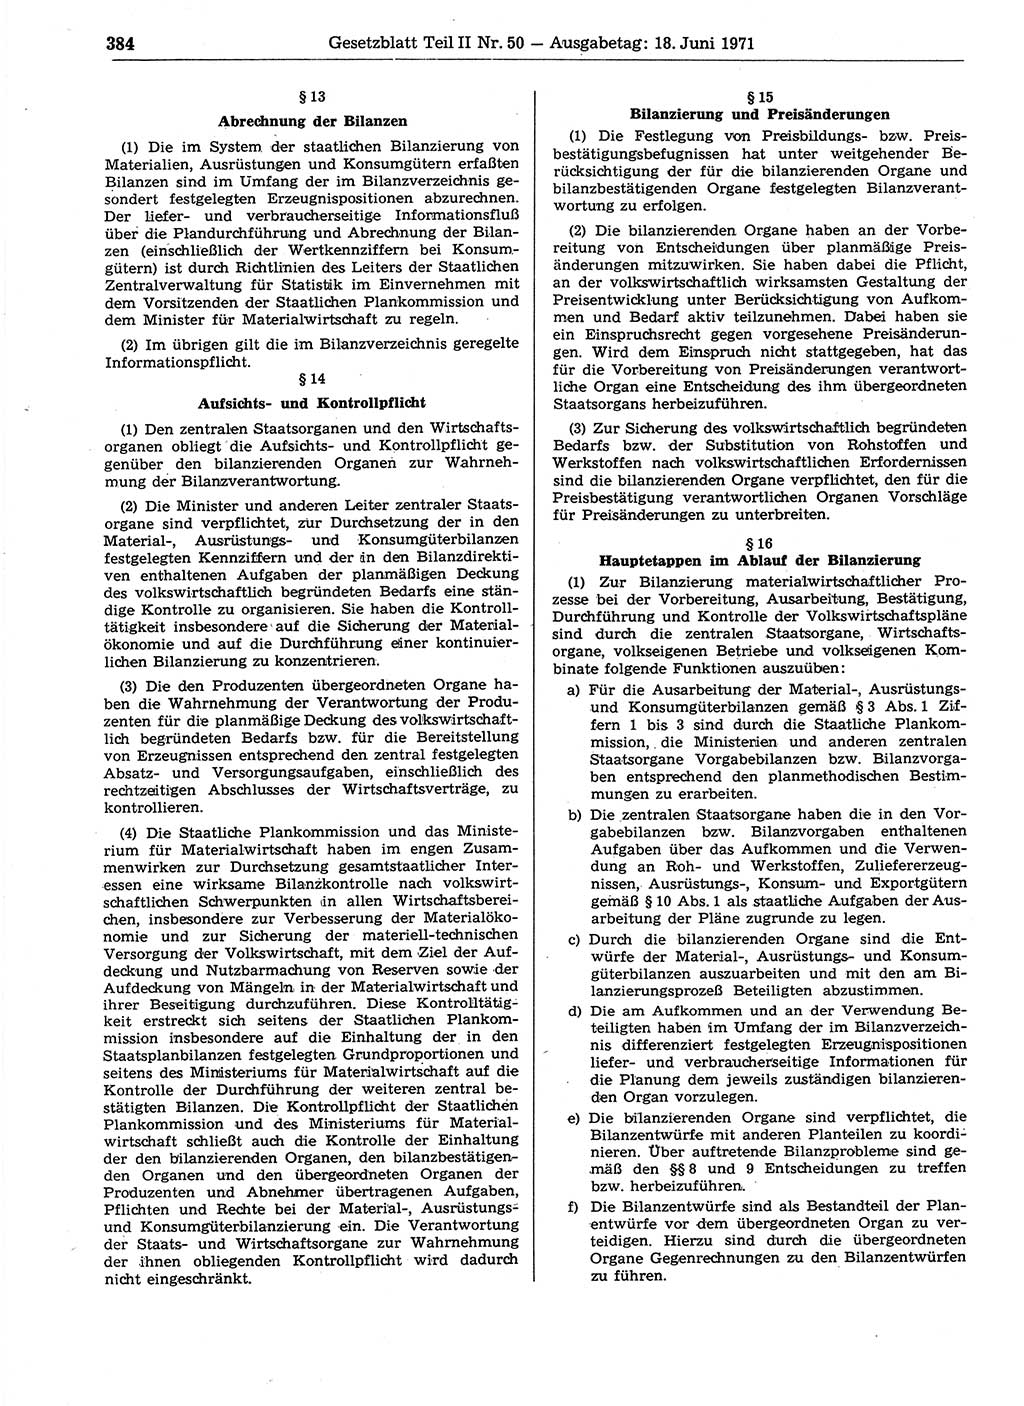 Gesetzblatt (GBl.) der Deutschen Demokratischen Republik (DDR) Teil ⅠⅠ 1971, Seite 384 (GBl. DDR ⅠⅠ 1971, S. 384)